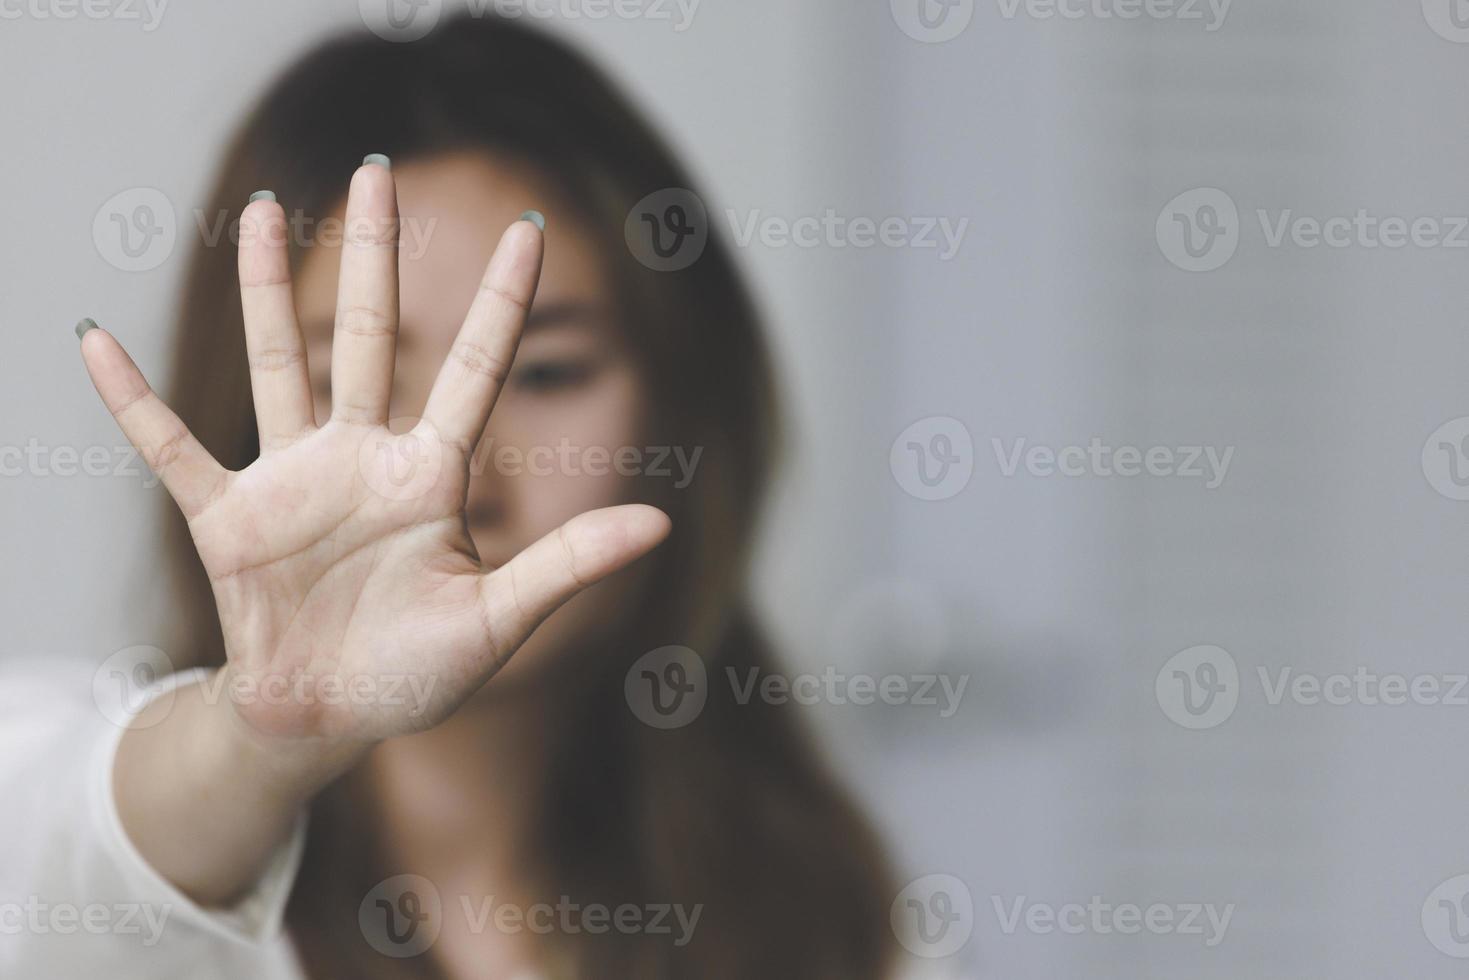 kvinna som räcker upp handen för att stoppa kampanjen för att stoppa våld mot kvinnor inklusive våldtäkt och människohandel. foto